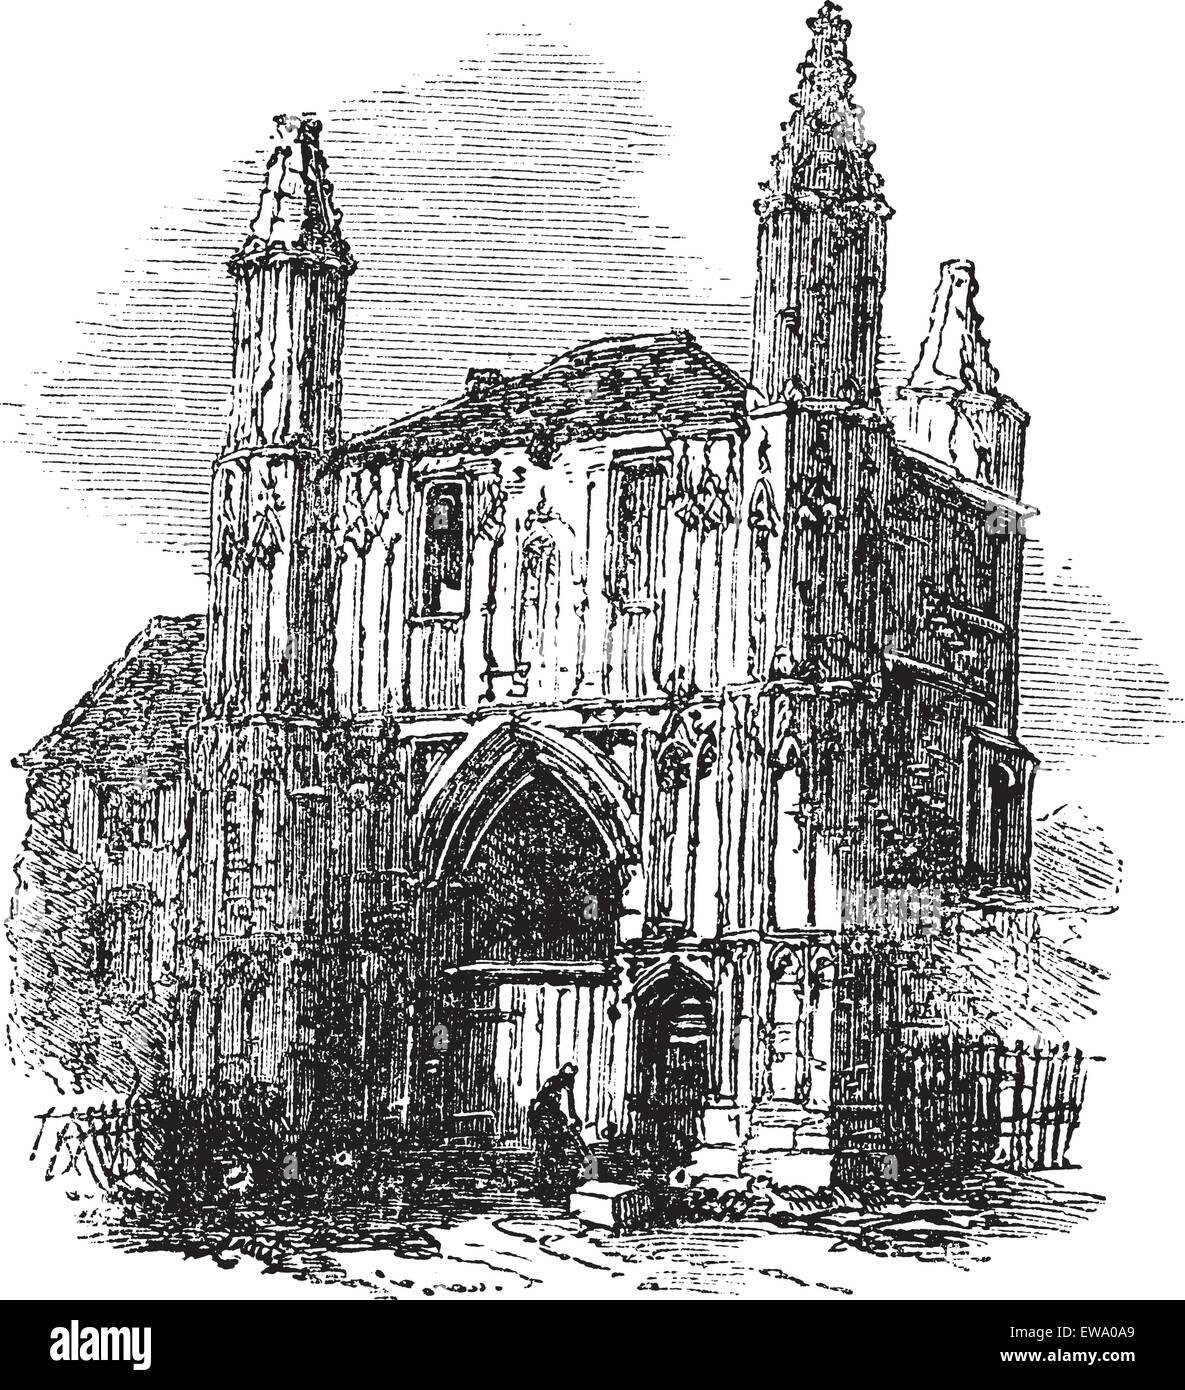 Abbazia di Colchester, Essex, Inghilterra, durante il 1890s, vintage incisione. Vecchie illustrazioni incise di Colchester Abbey. Illustrazione Vettoriale